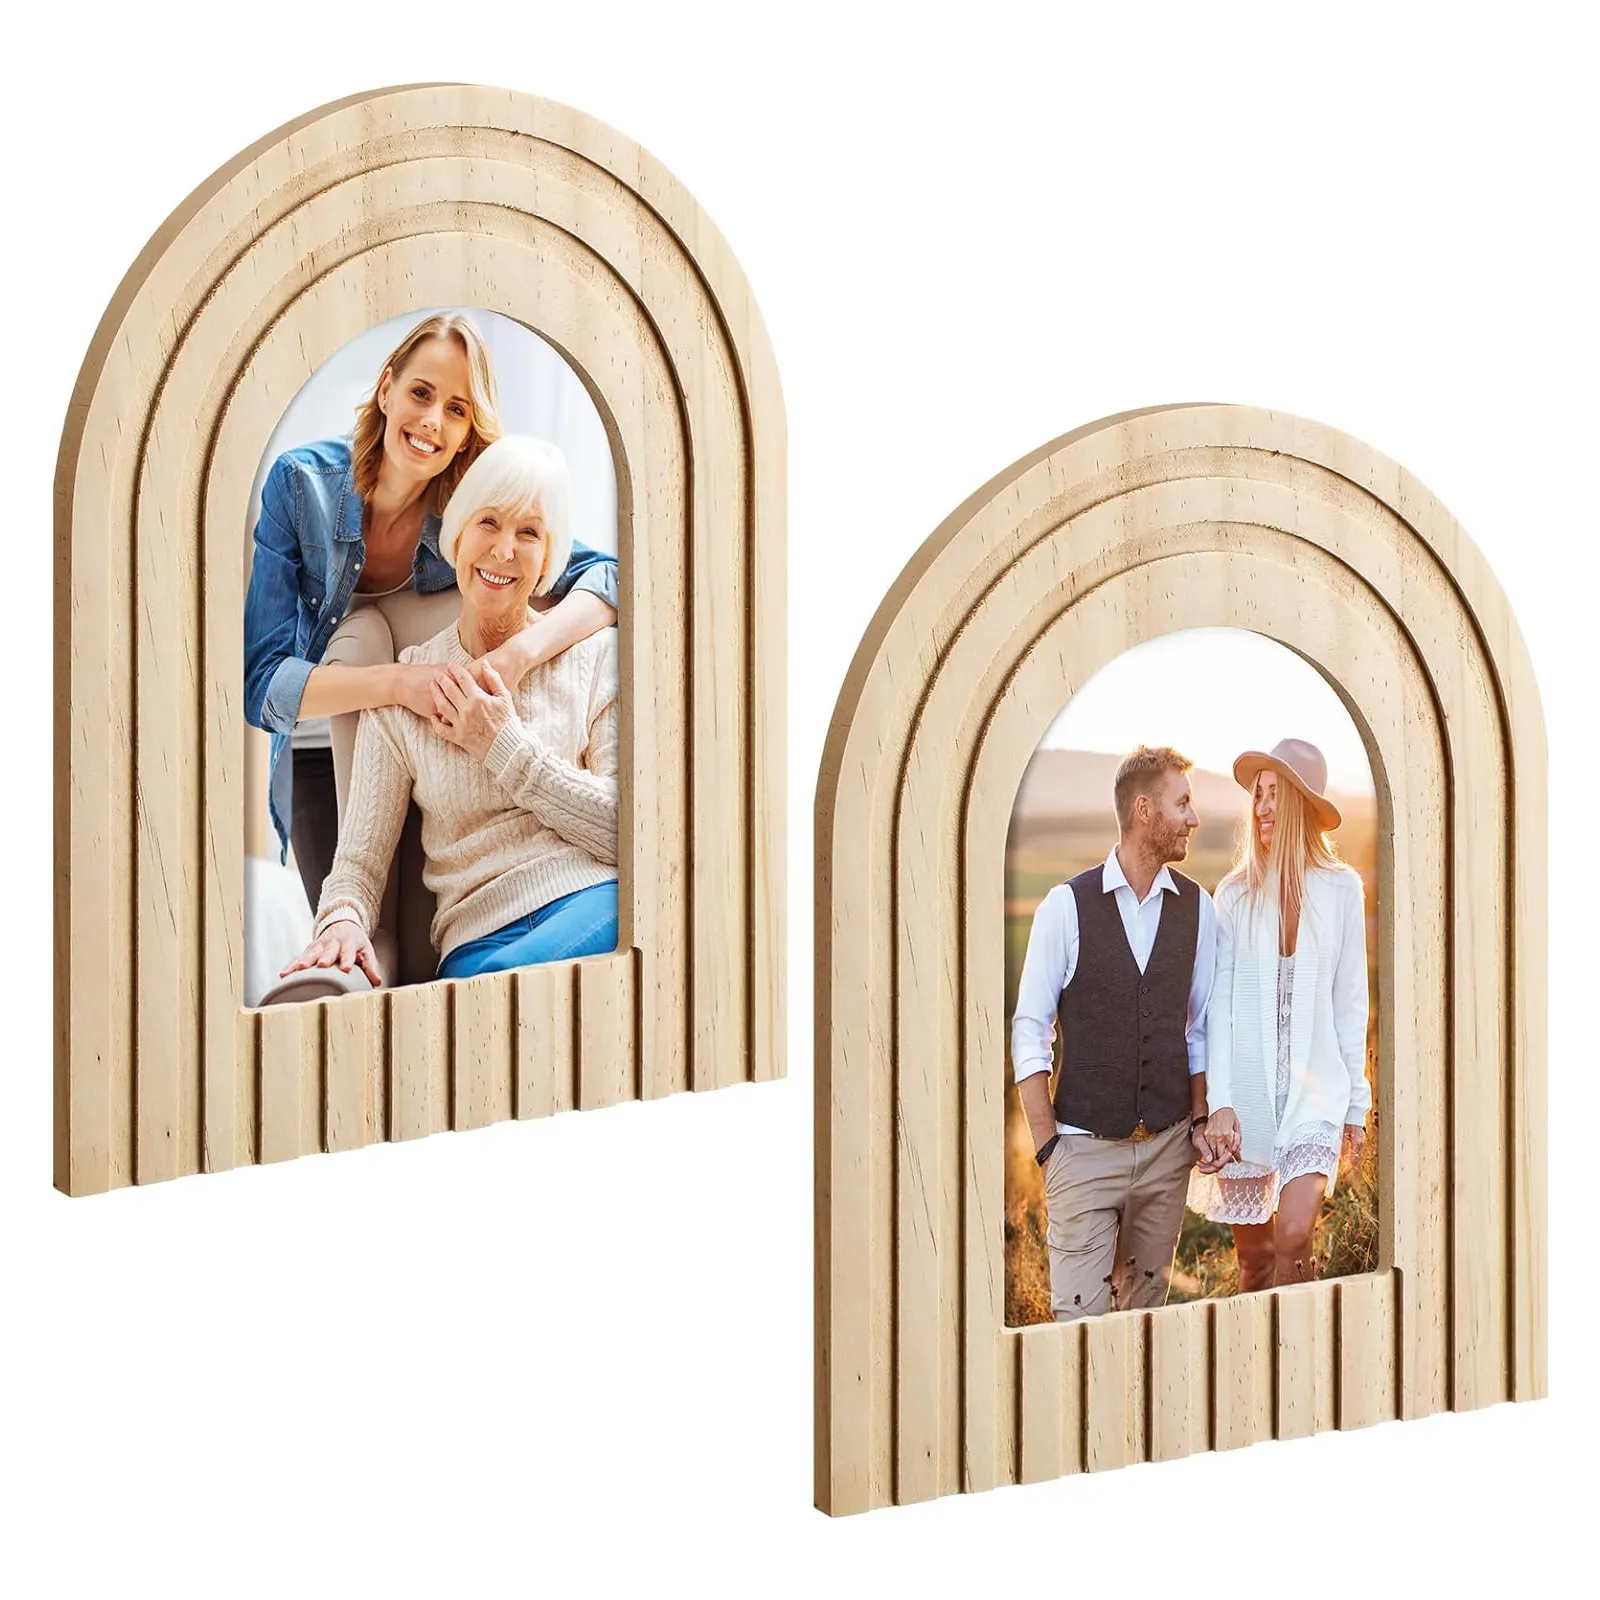 Cornice in legno curva cornice moderna design design gradiente cornice decorativa adatta per la decorazione domestica